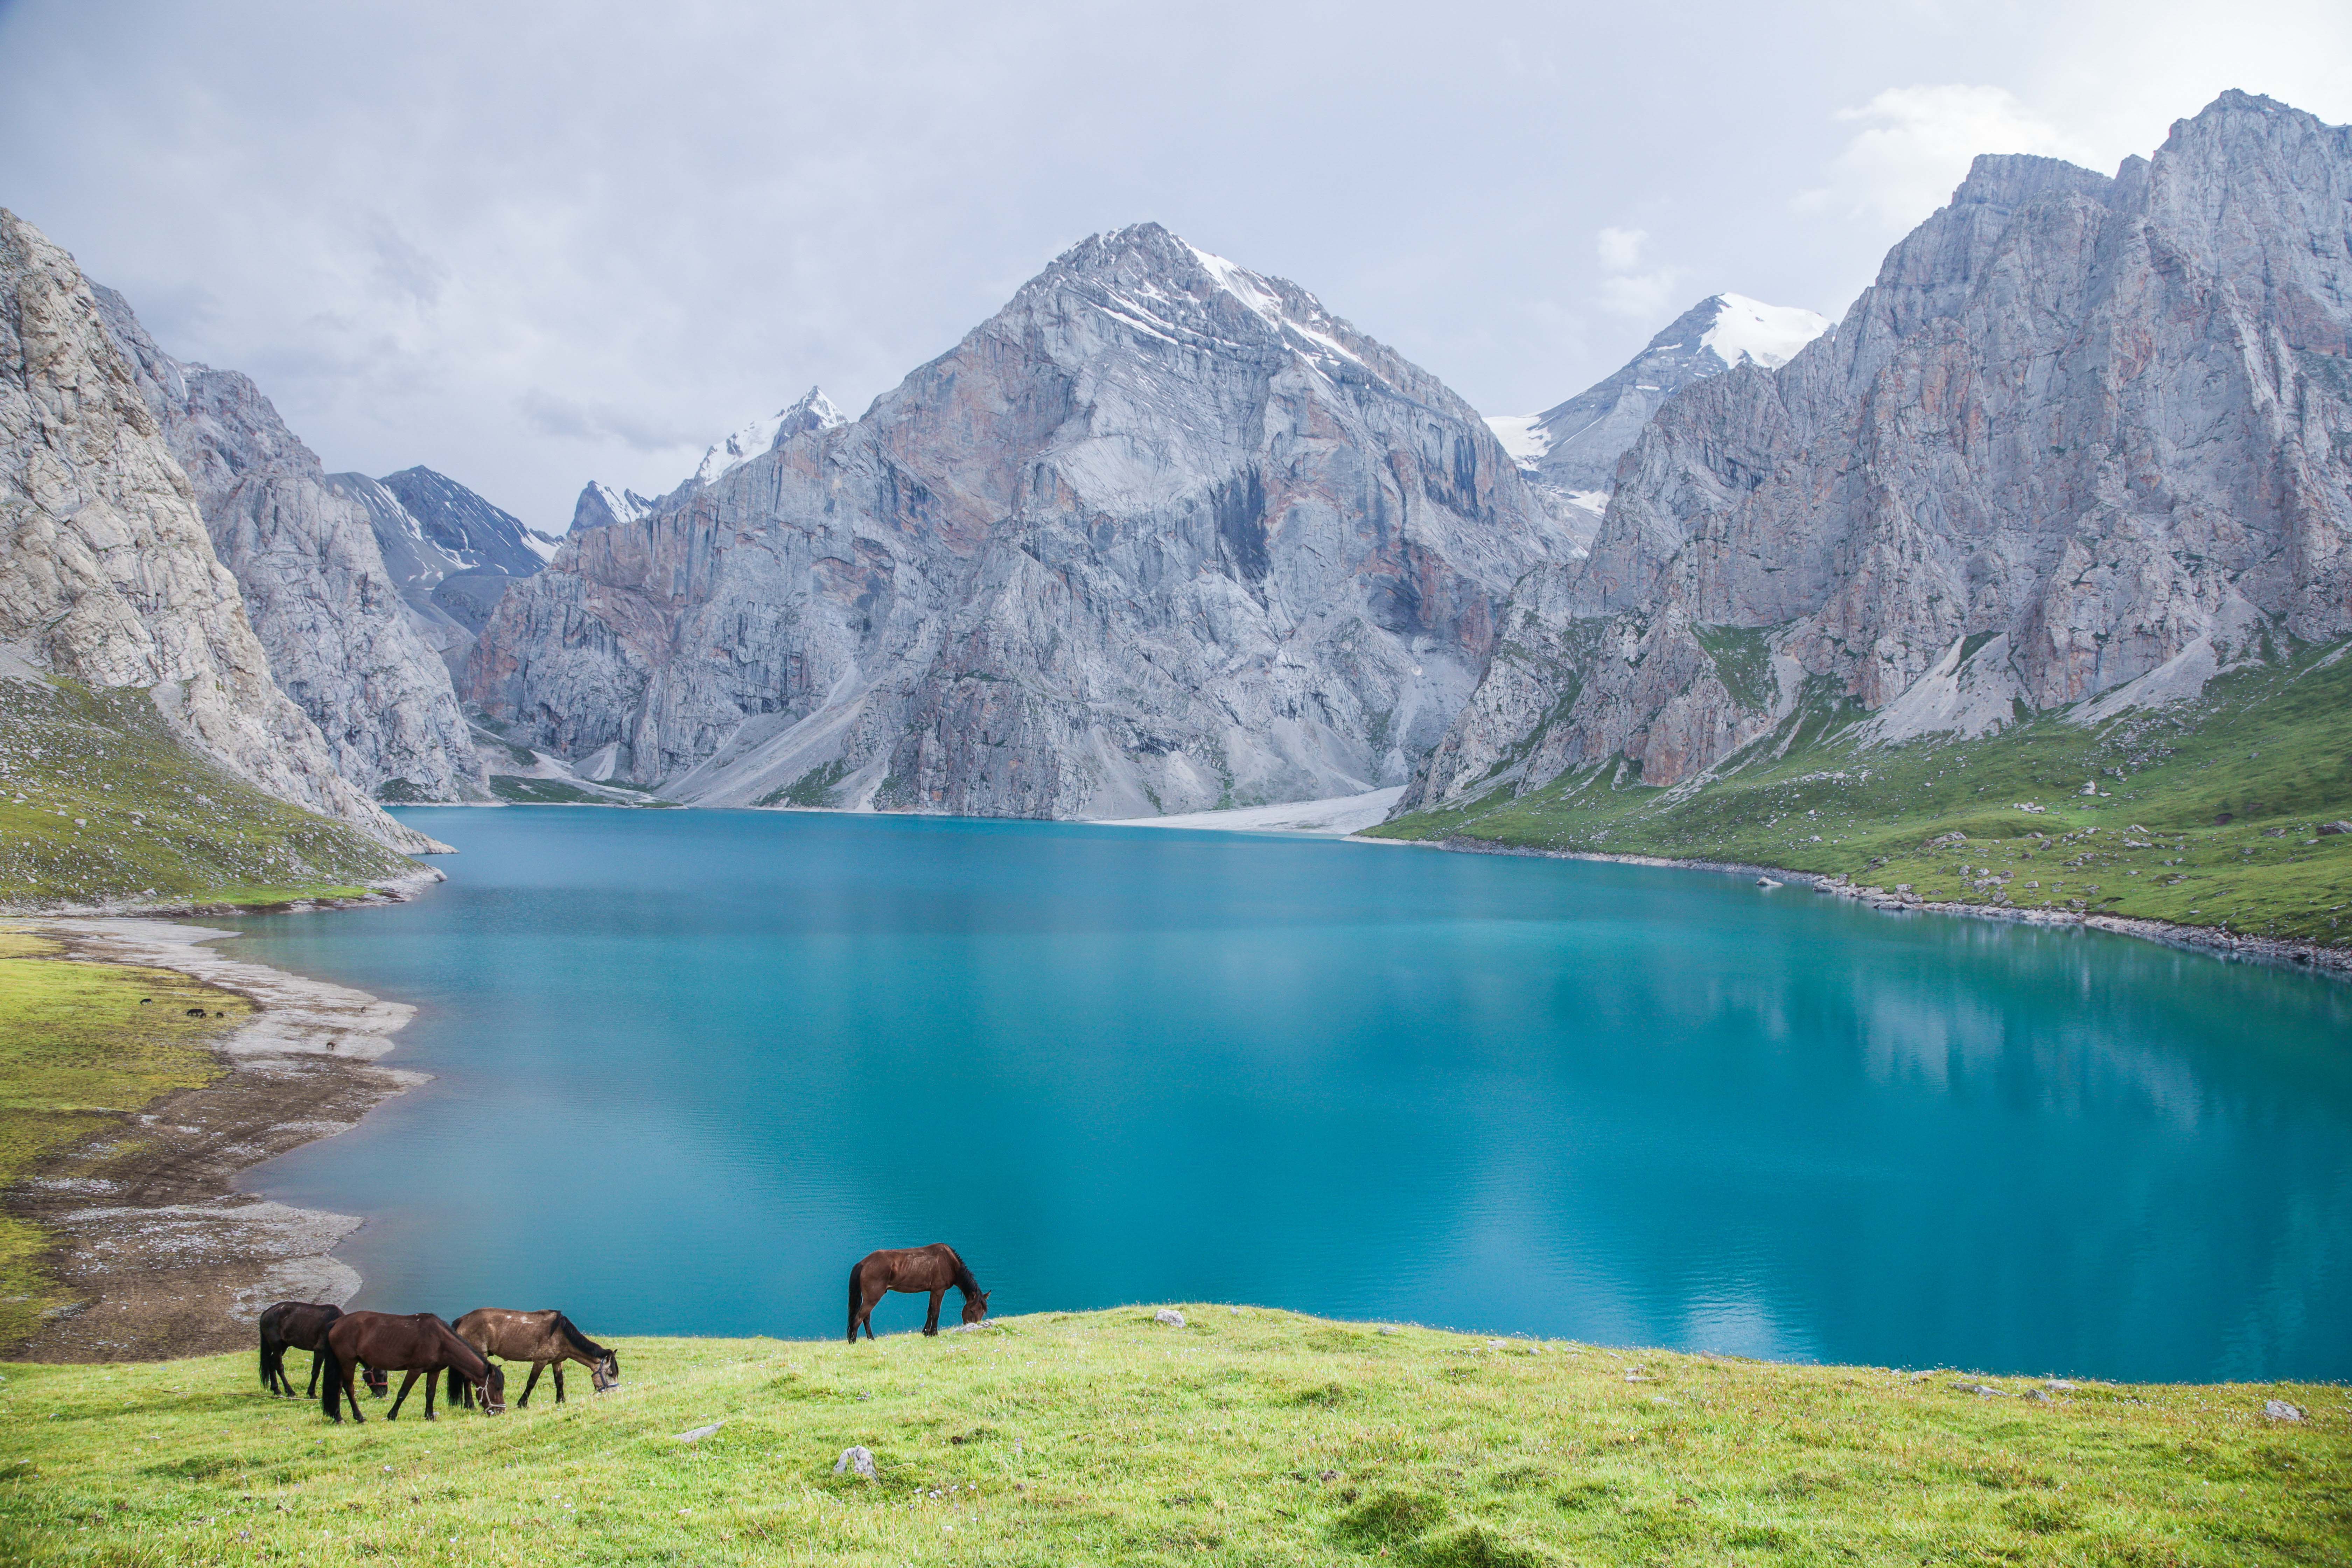 湘湖|到新疆自驾旅行一个月需要多少预算啊？有过新疆旅行经历的朋友可以给讲讲吗？